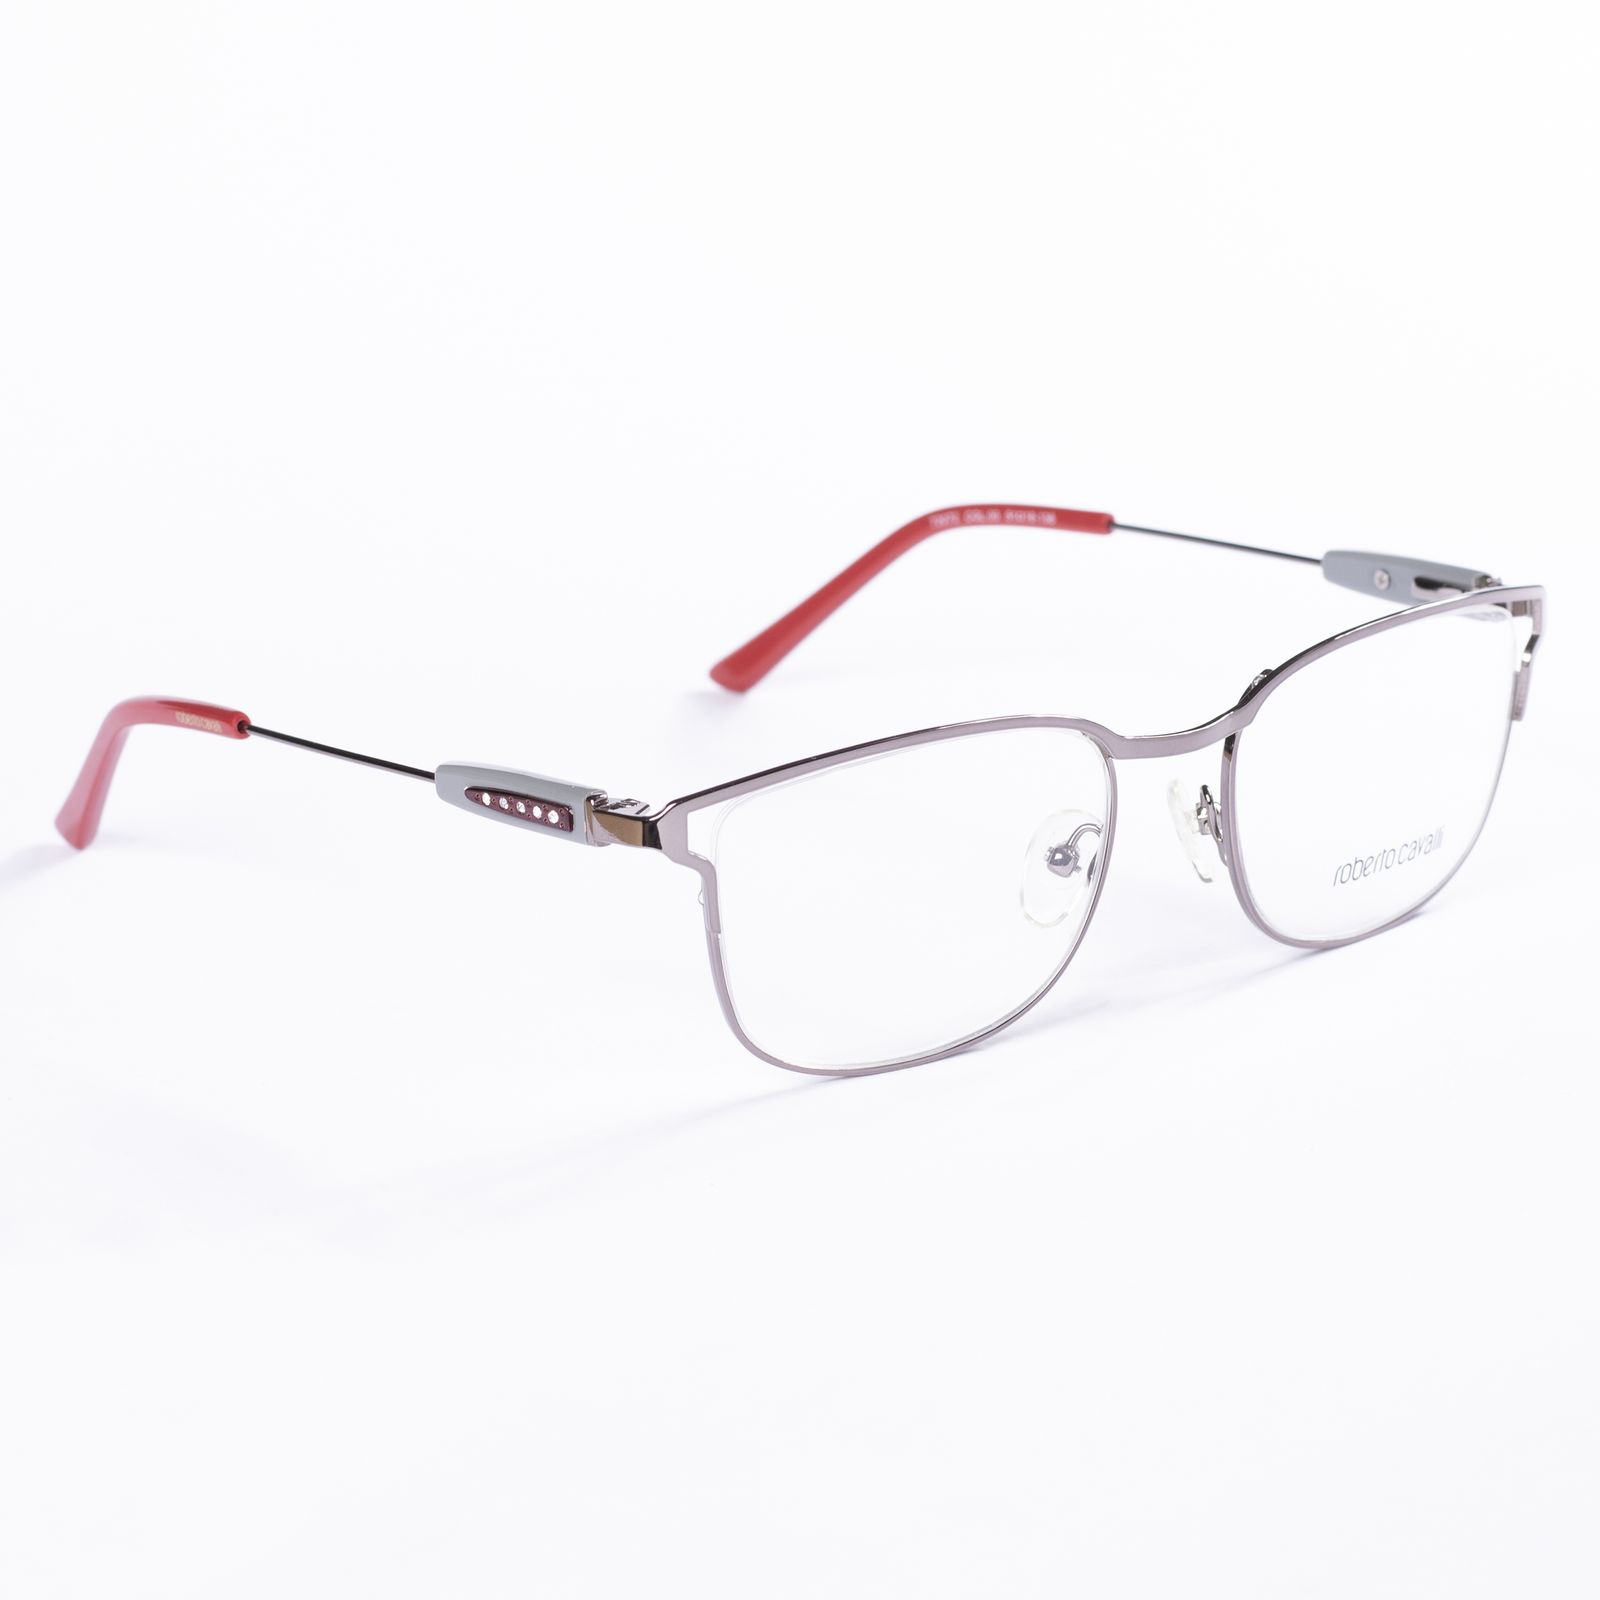 فریم عینک طبی  مدل 45560206 -  - 2